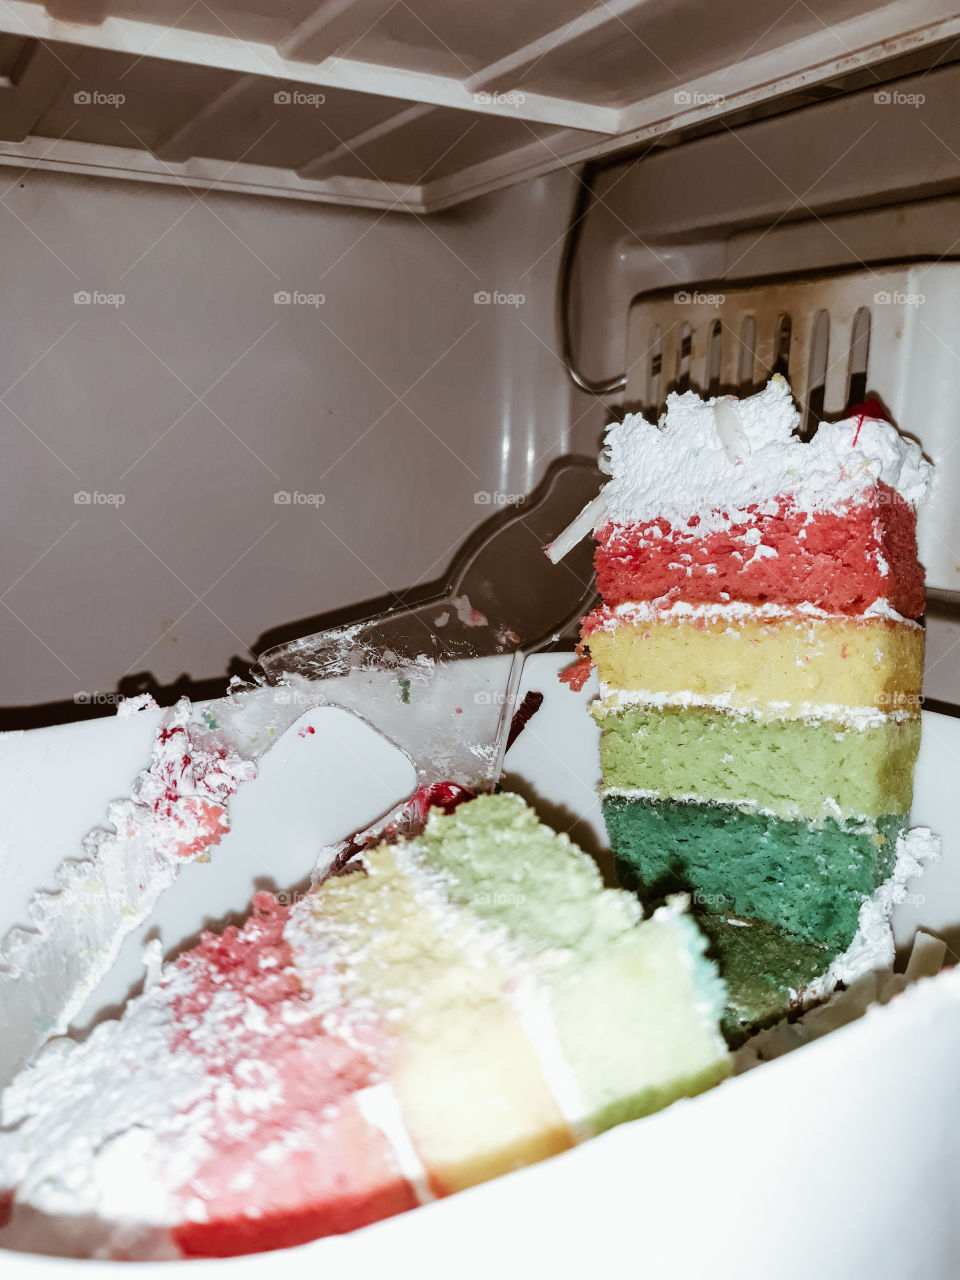 delicius rainbow cake